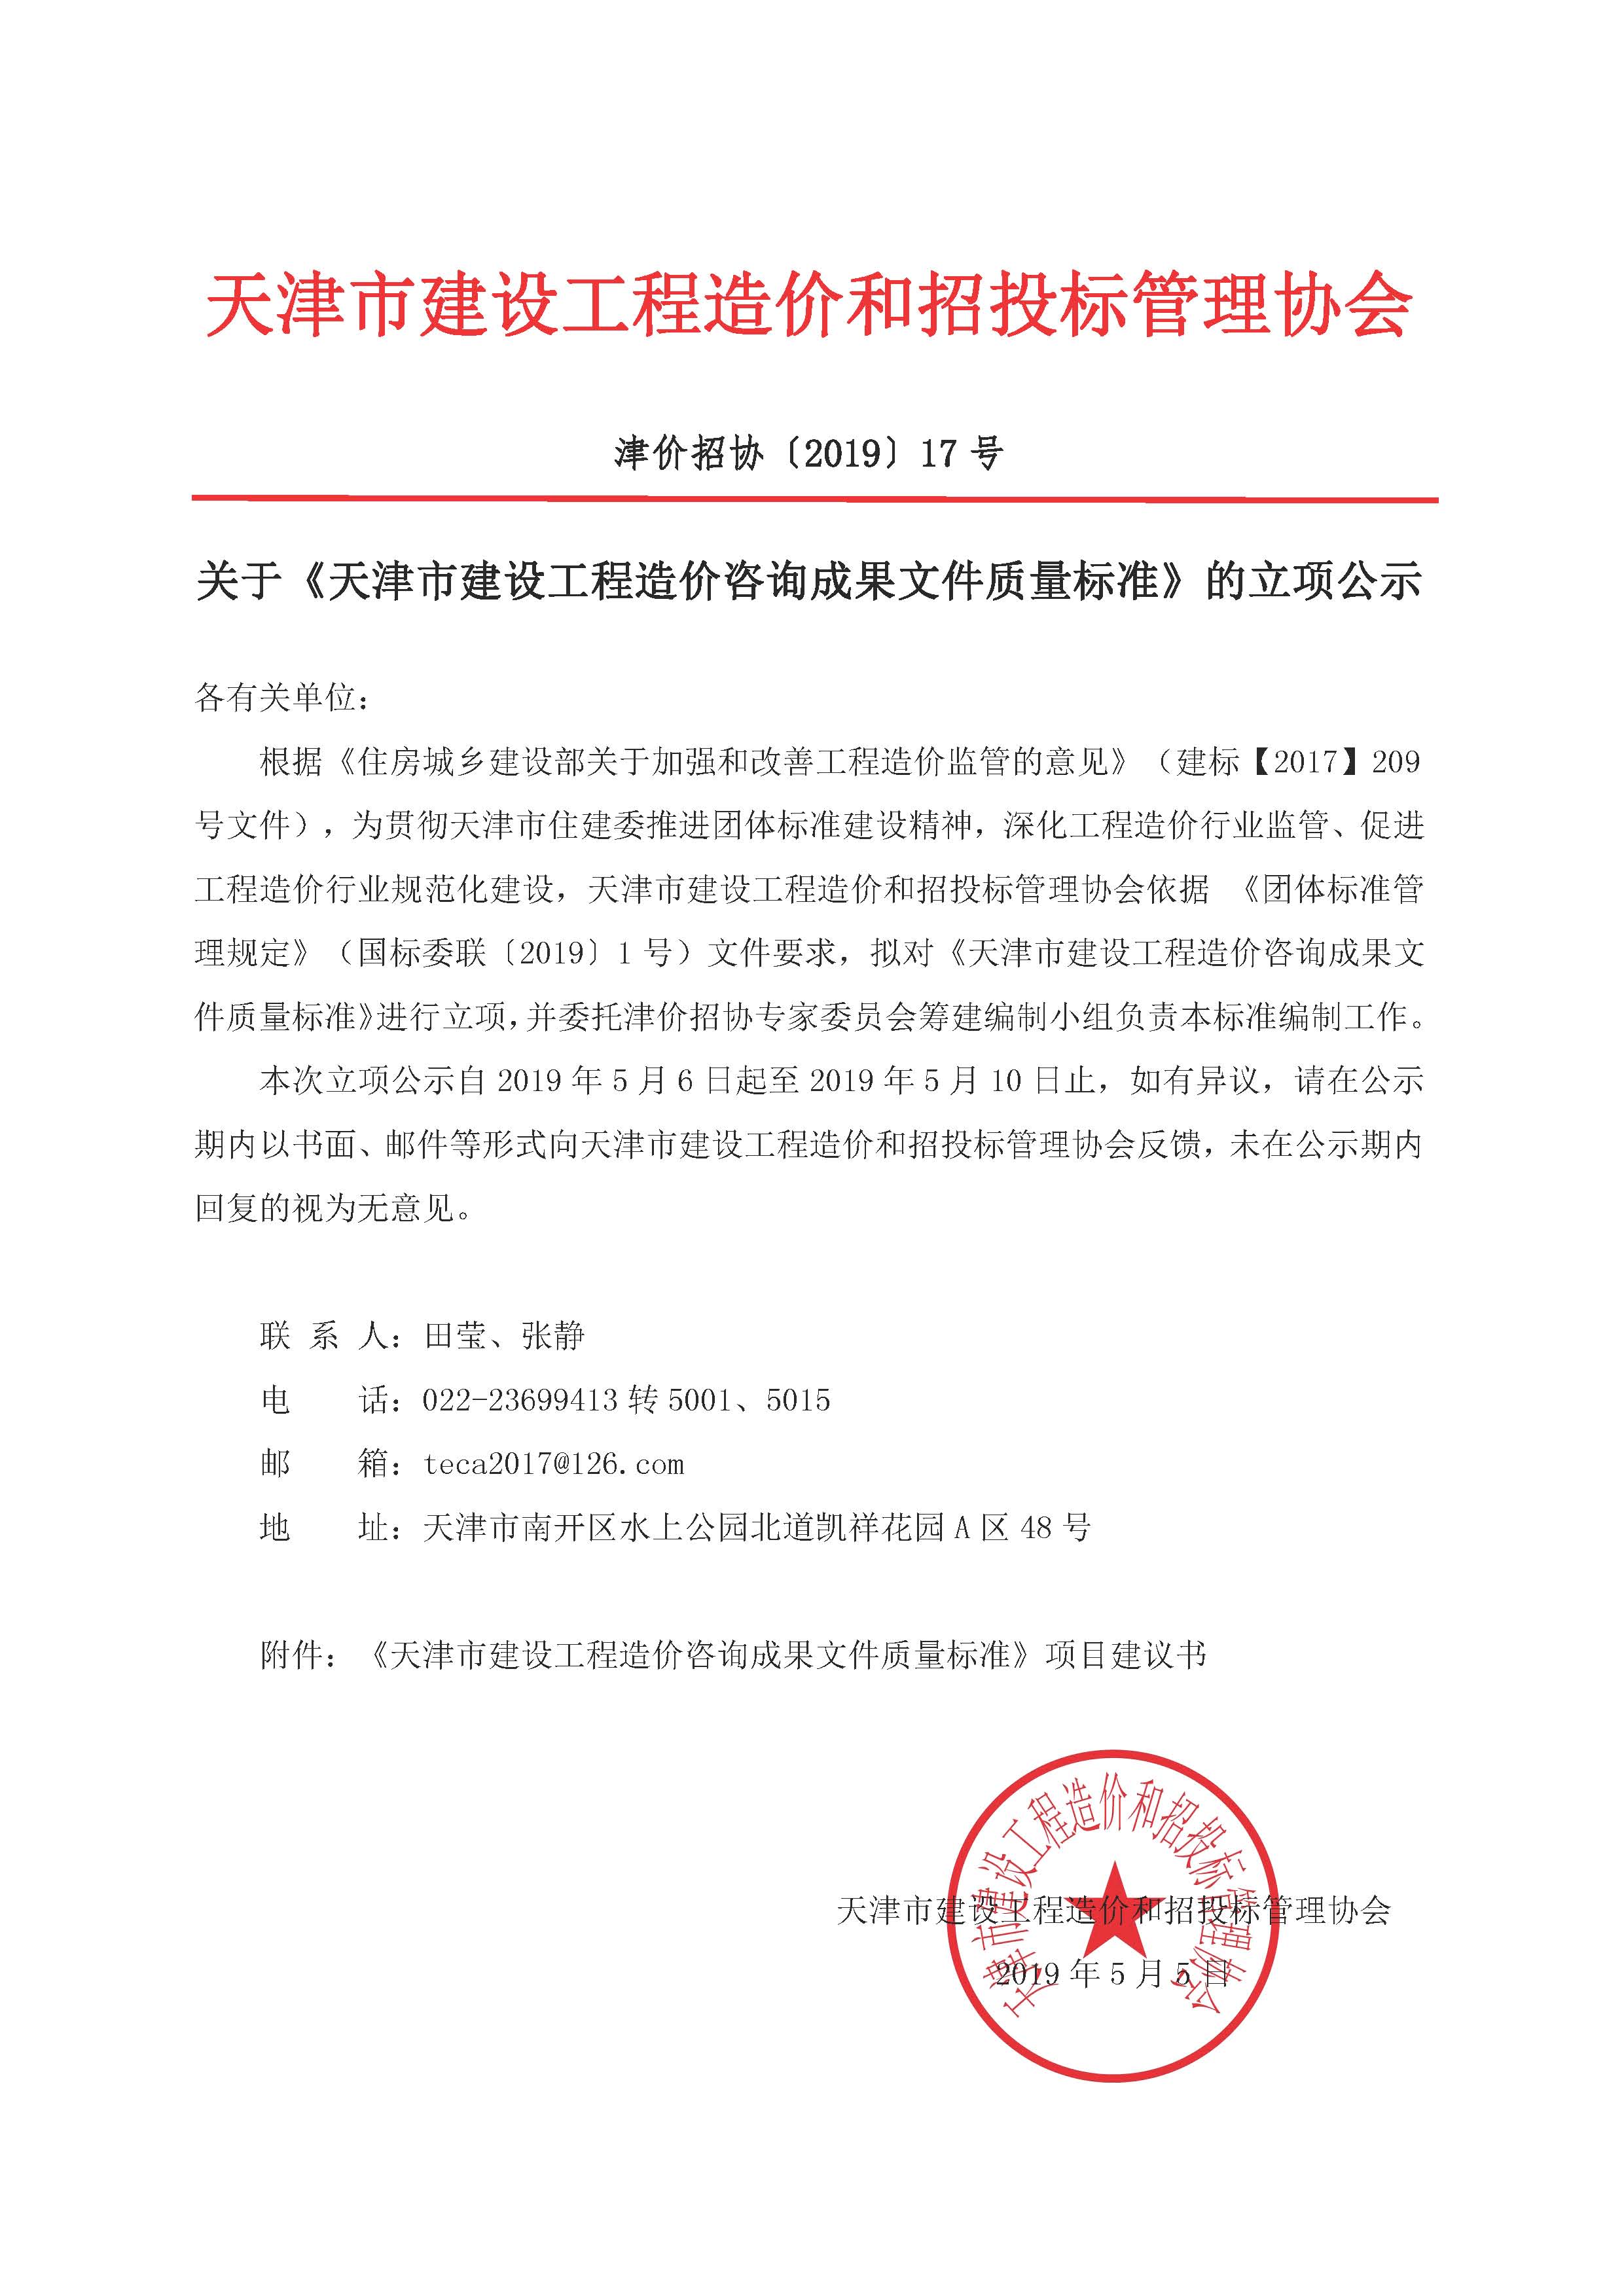 关于《天津市建设工程造价咨询成果文件质量标准》的立项公示.jpg